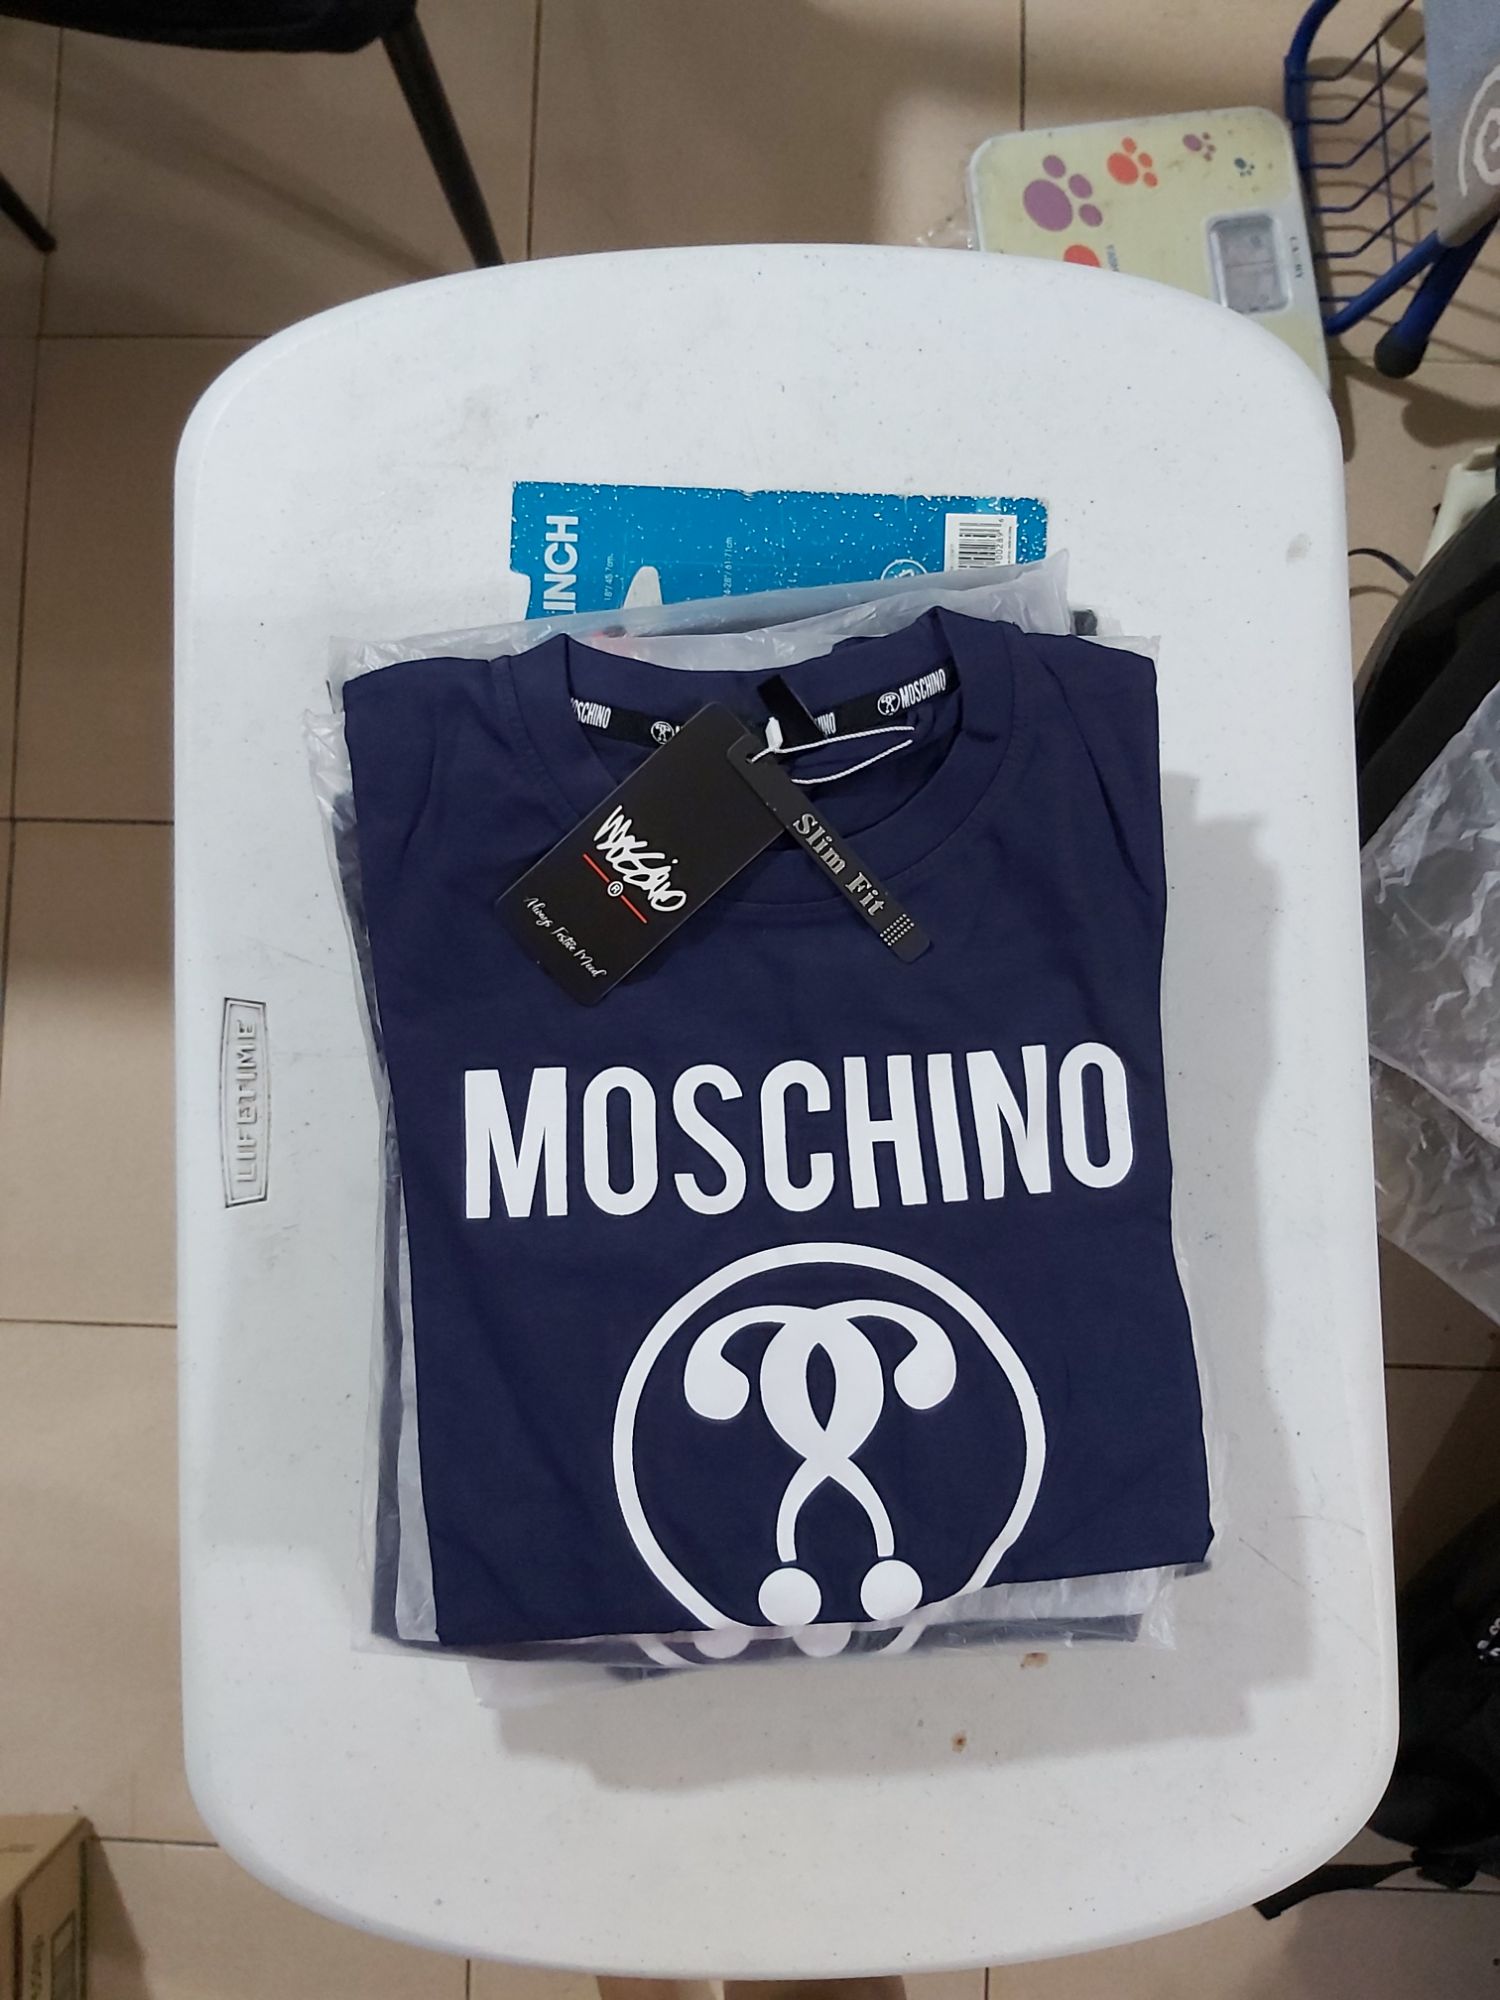 moschino inspired t shirt